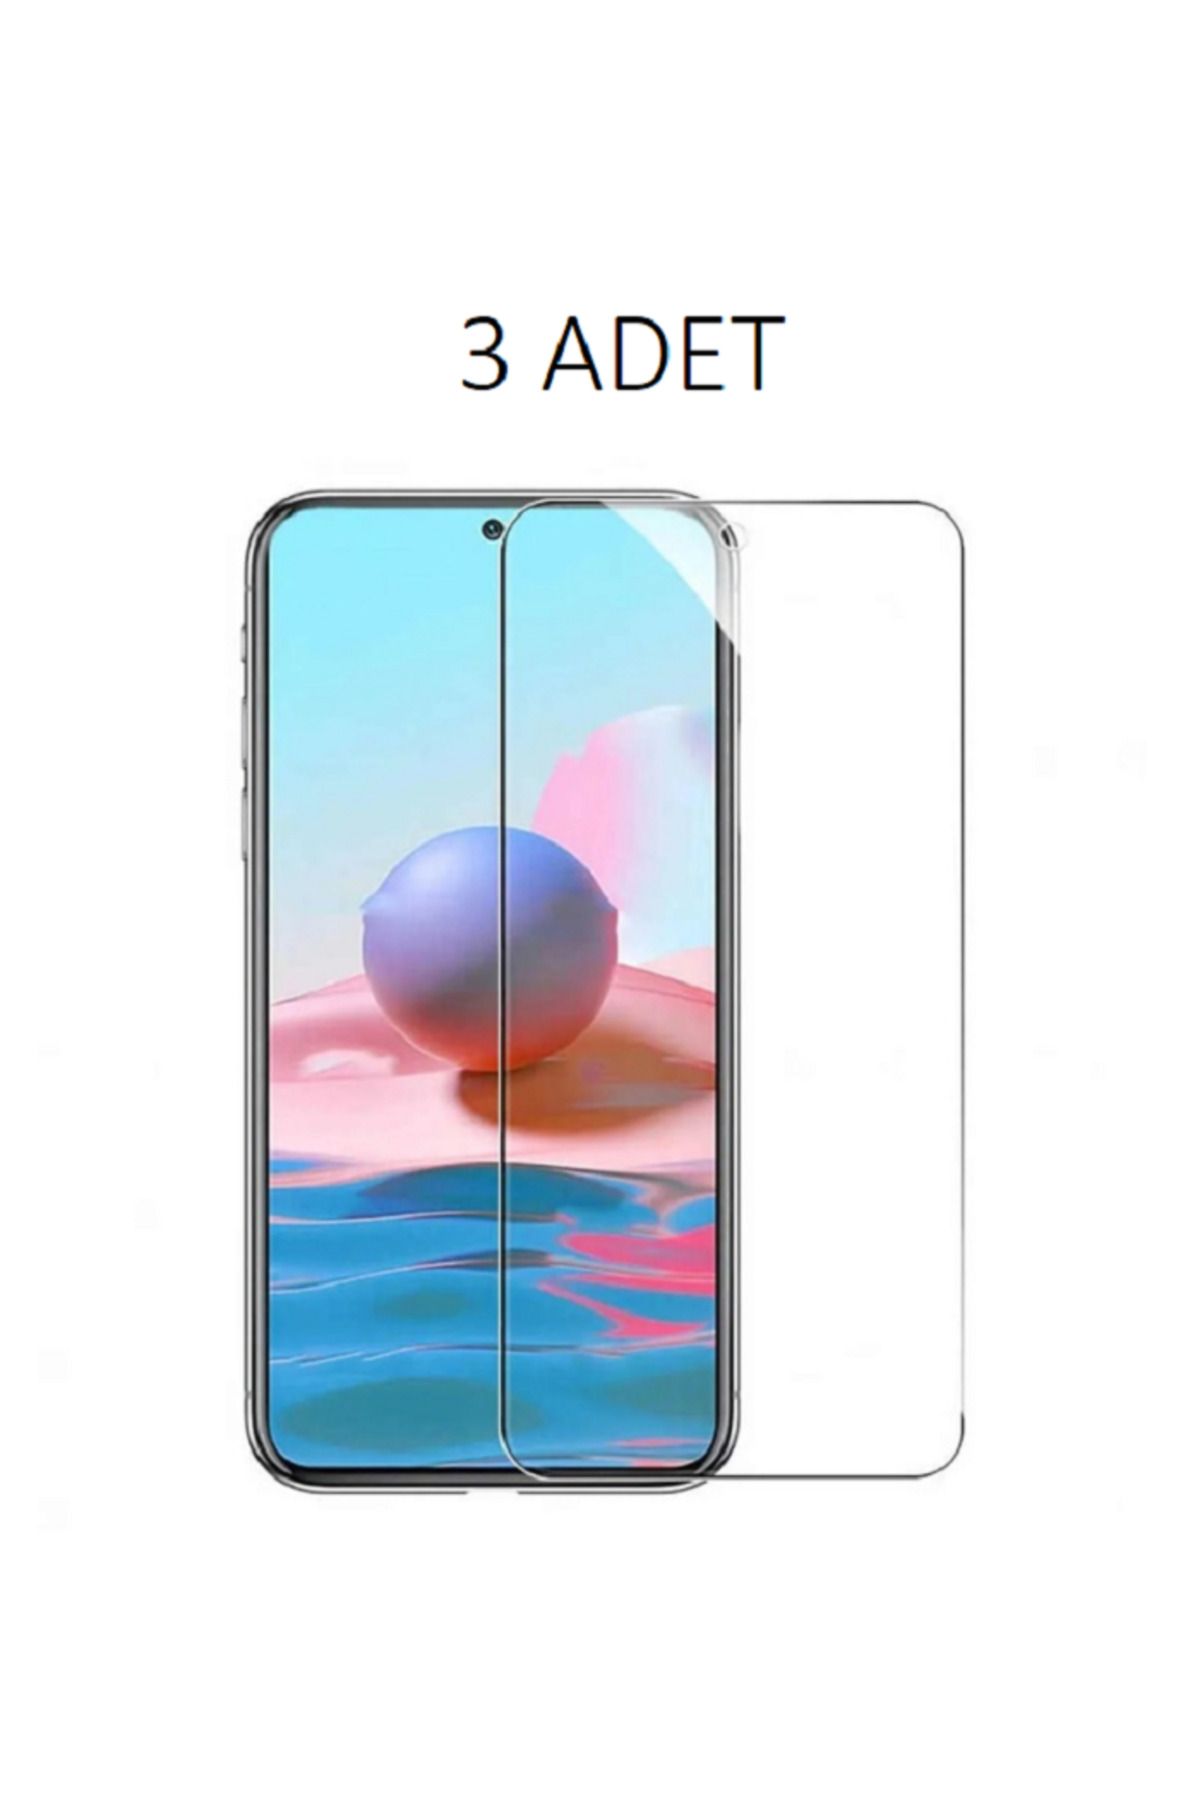 LG 3 ADET LG K8 2017 Euro Uyumlu Şeffaf Esnek Nano Ekran Koruyucu